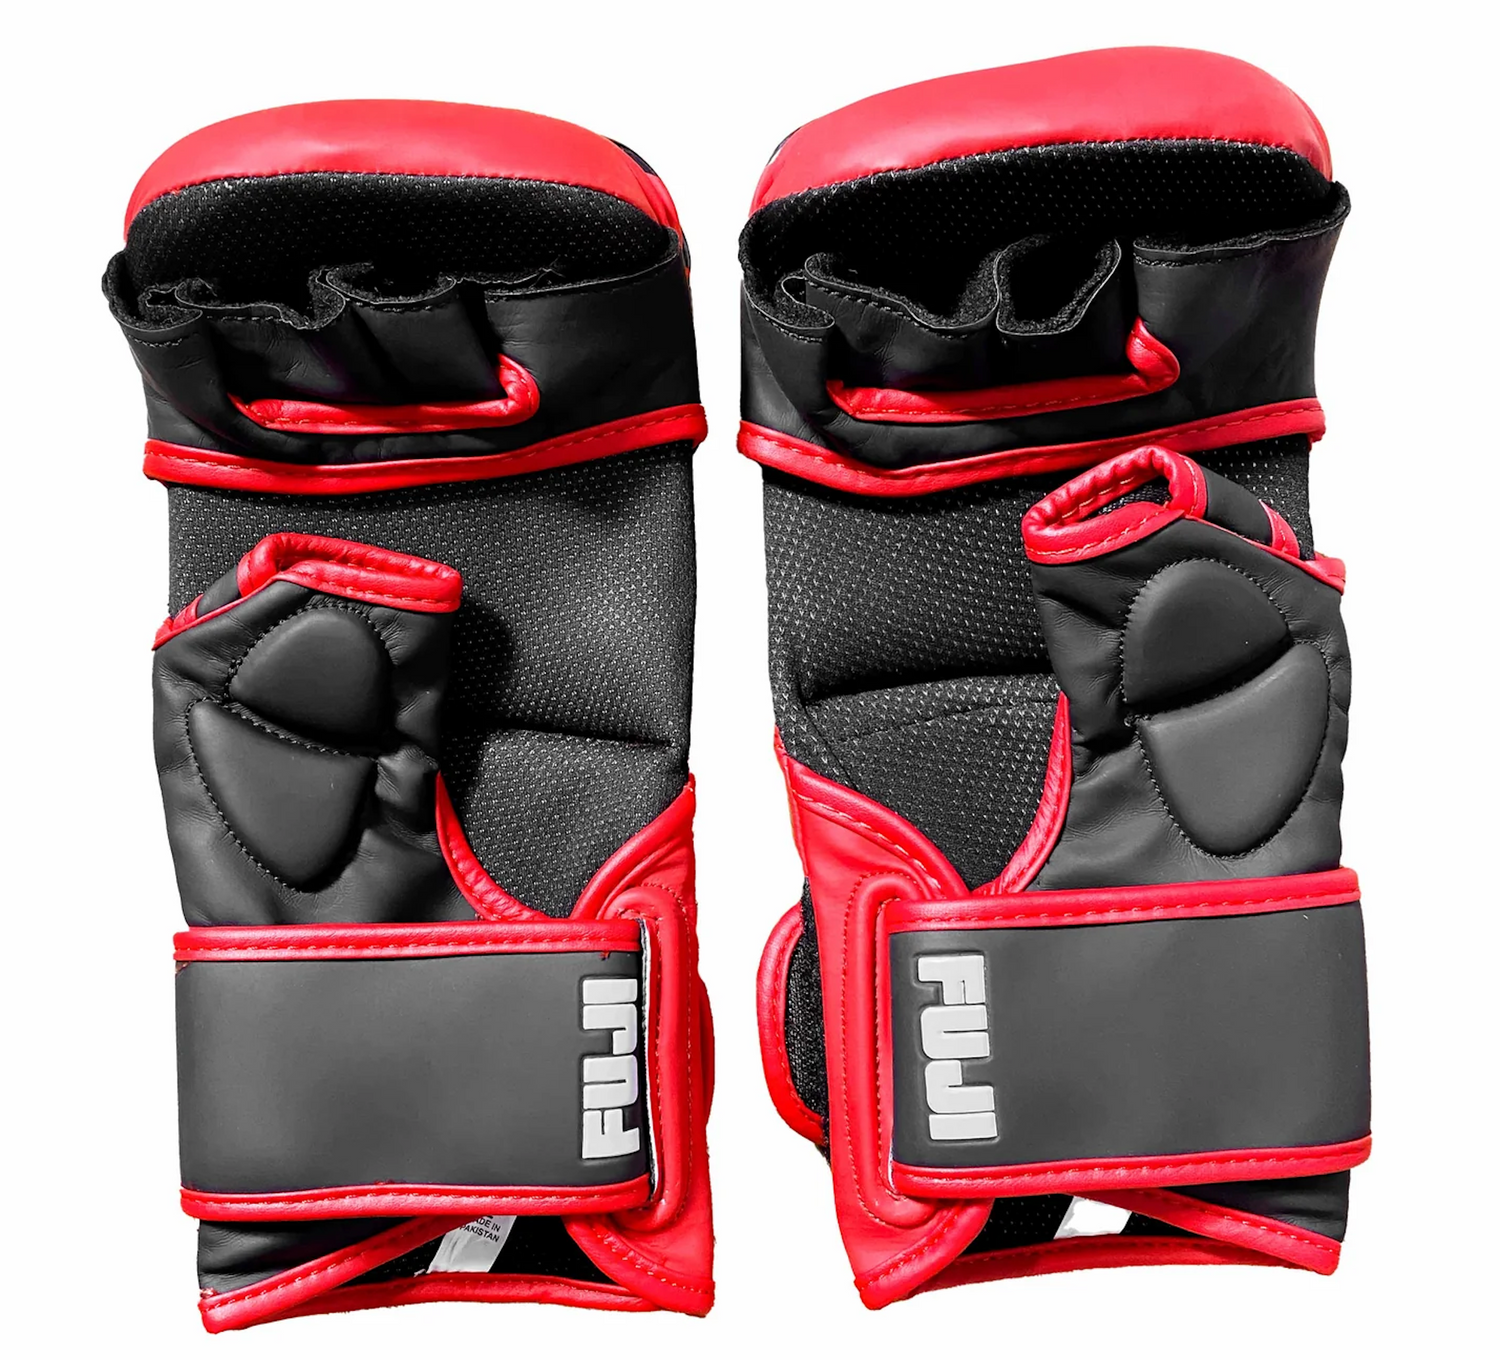 Essential Hybrid MMA Gloves by Fuji